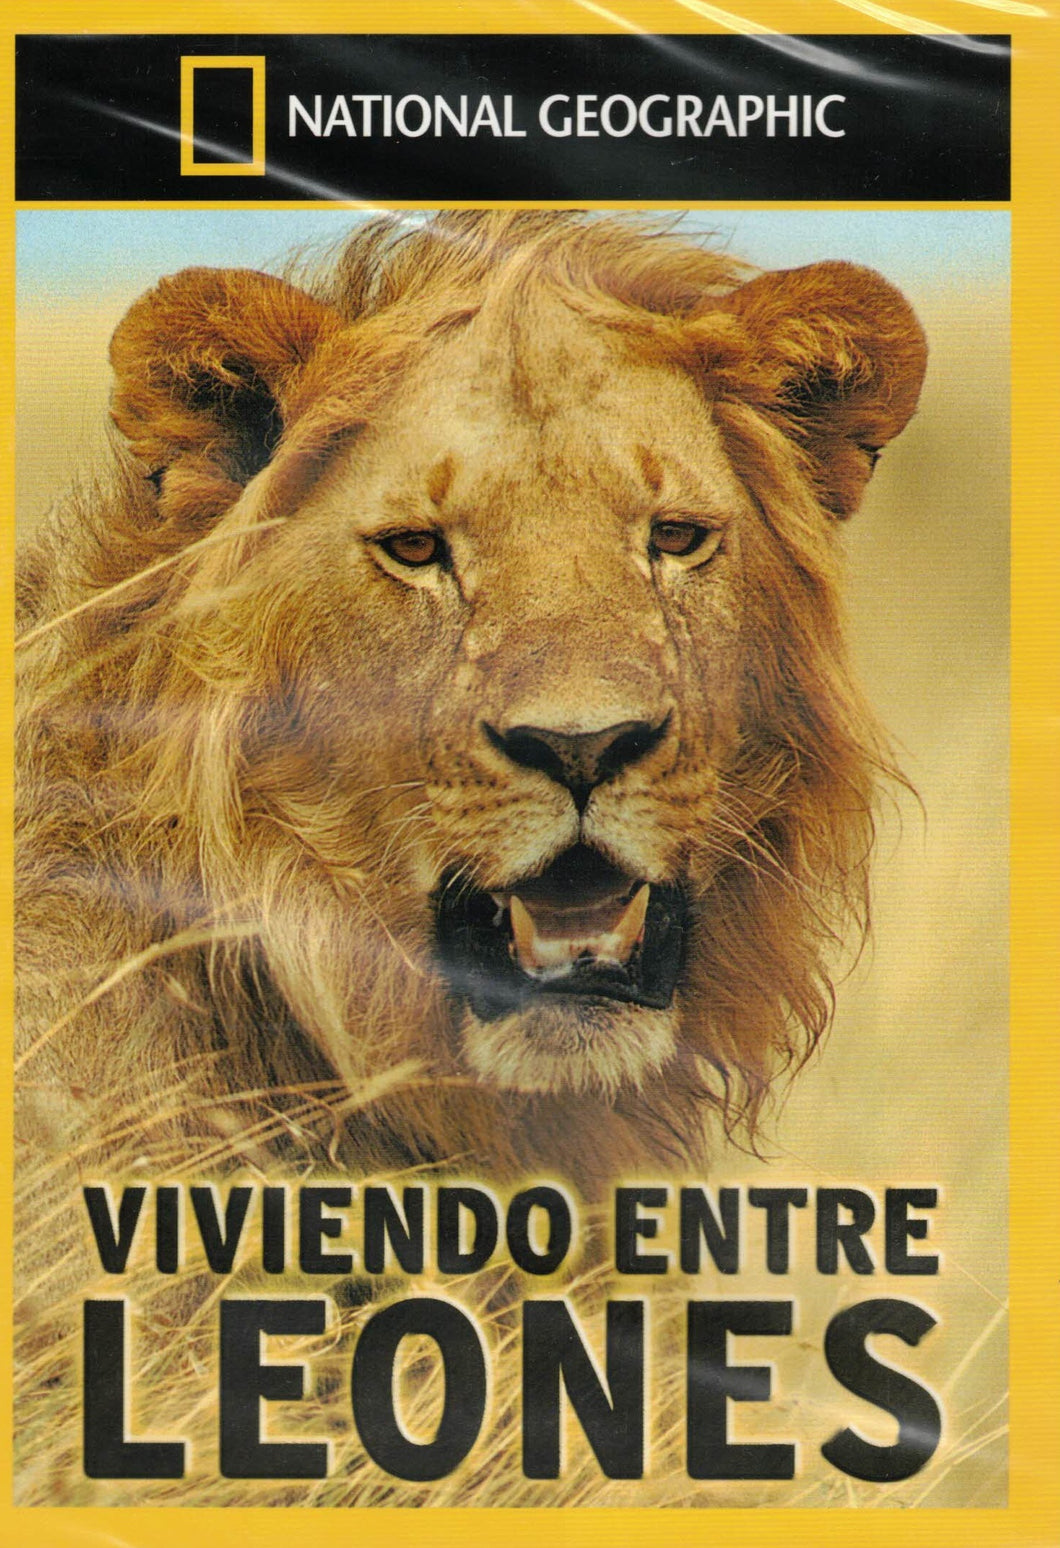 VIVIENDO ENTRE LEONES - NATIONAL GEOGRAPHIC (DVD) C-198 (NUEVO)